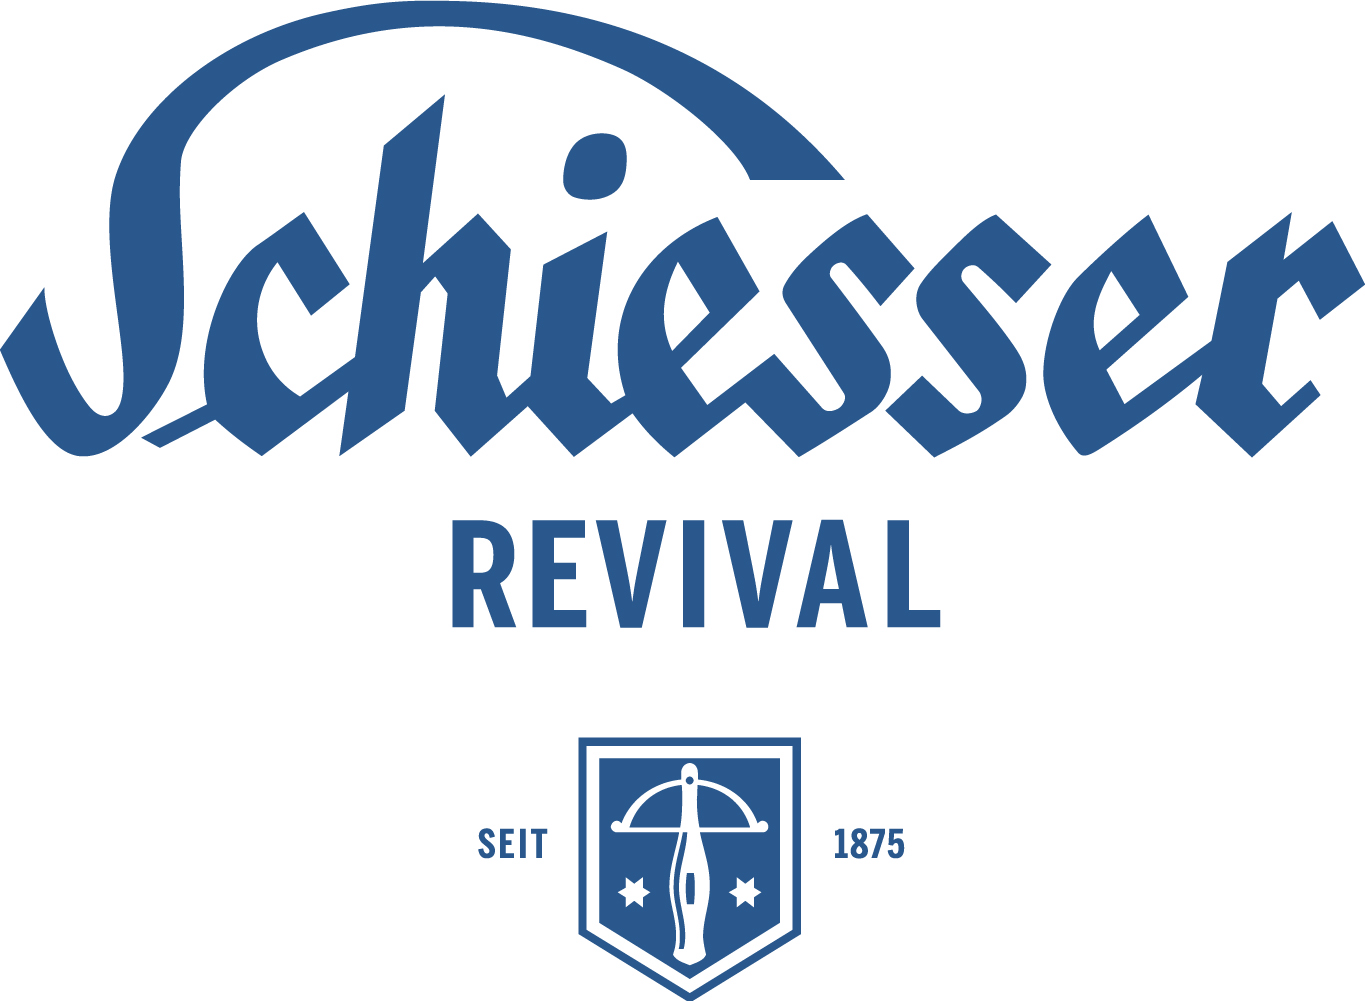 Schiesser Logo